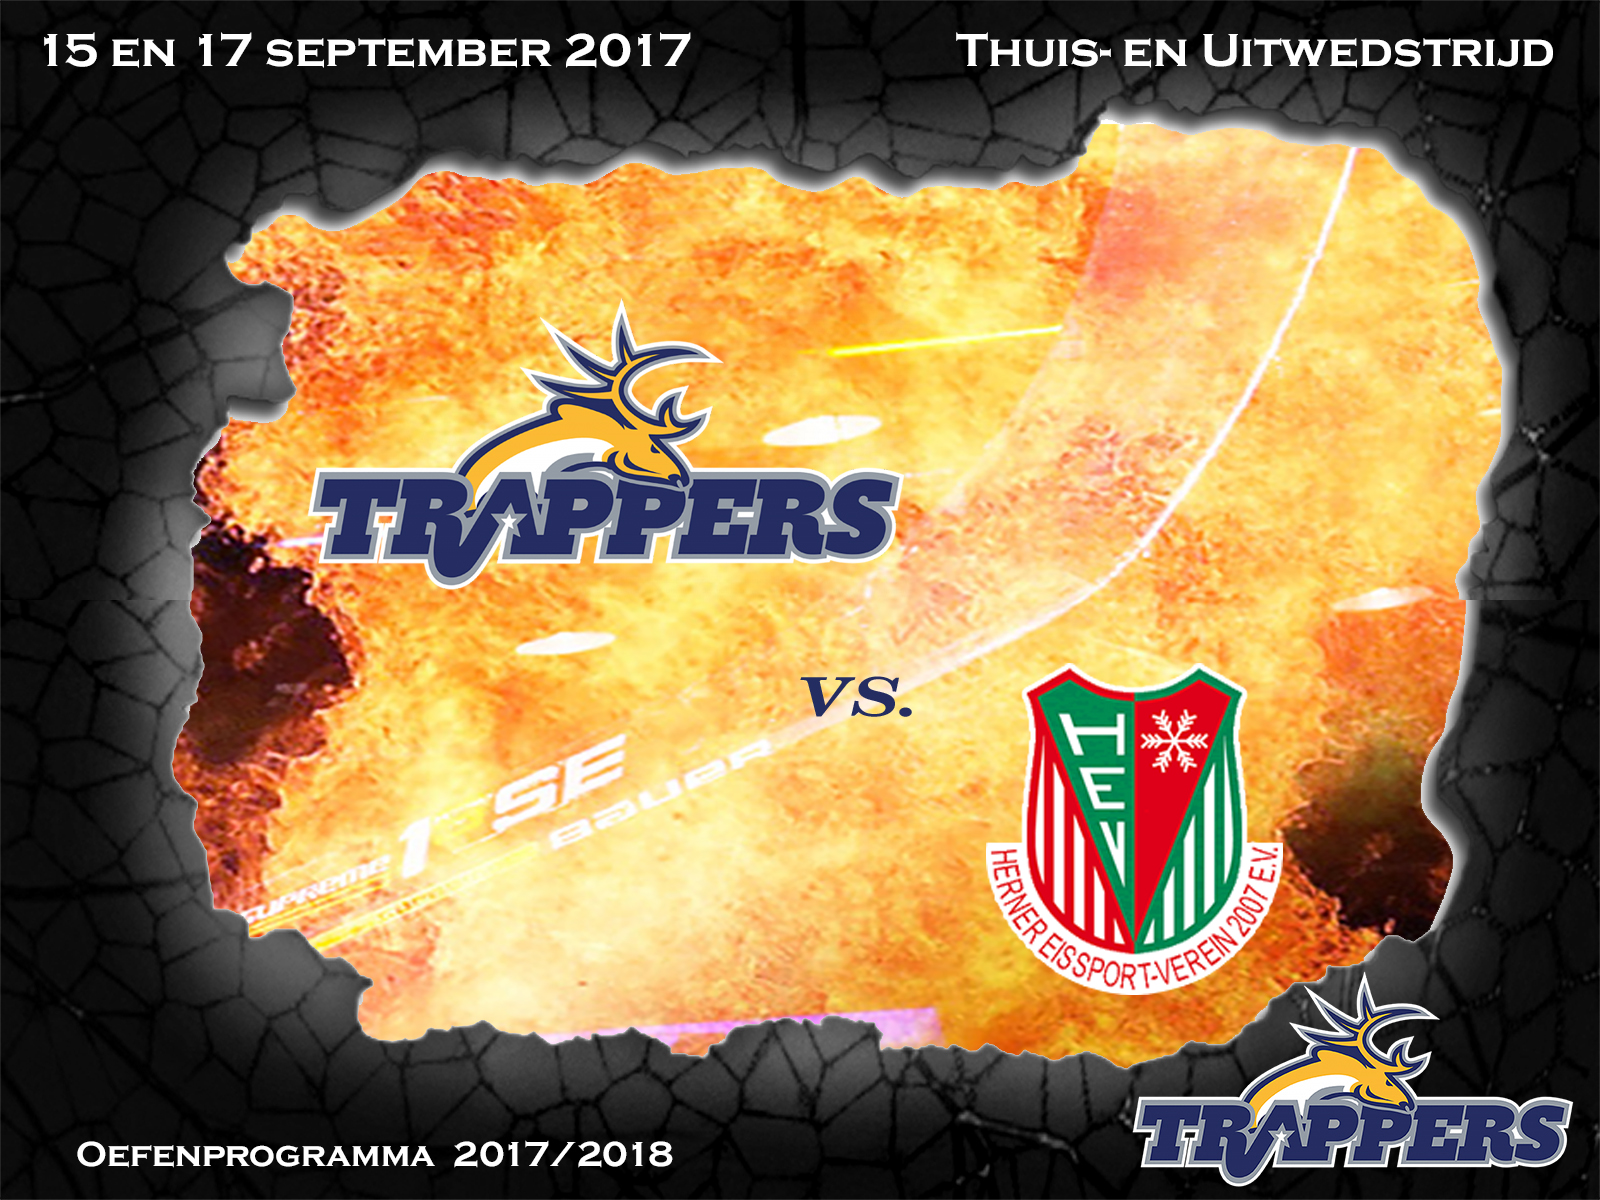 Voorbeschouwing: Tilburg Trappers vs. Herner EV